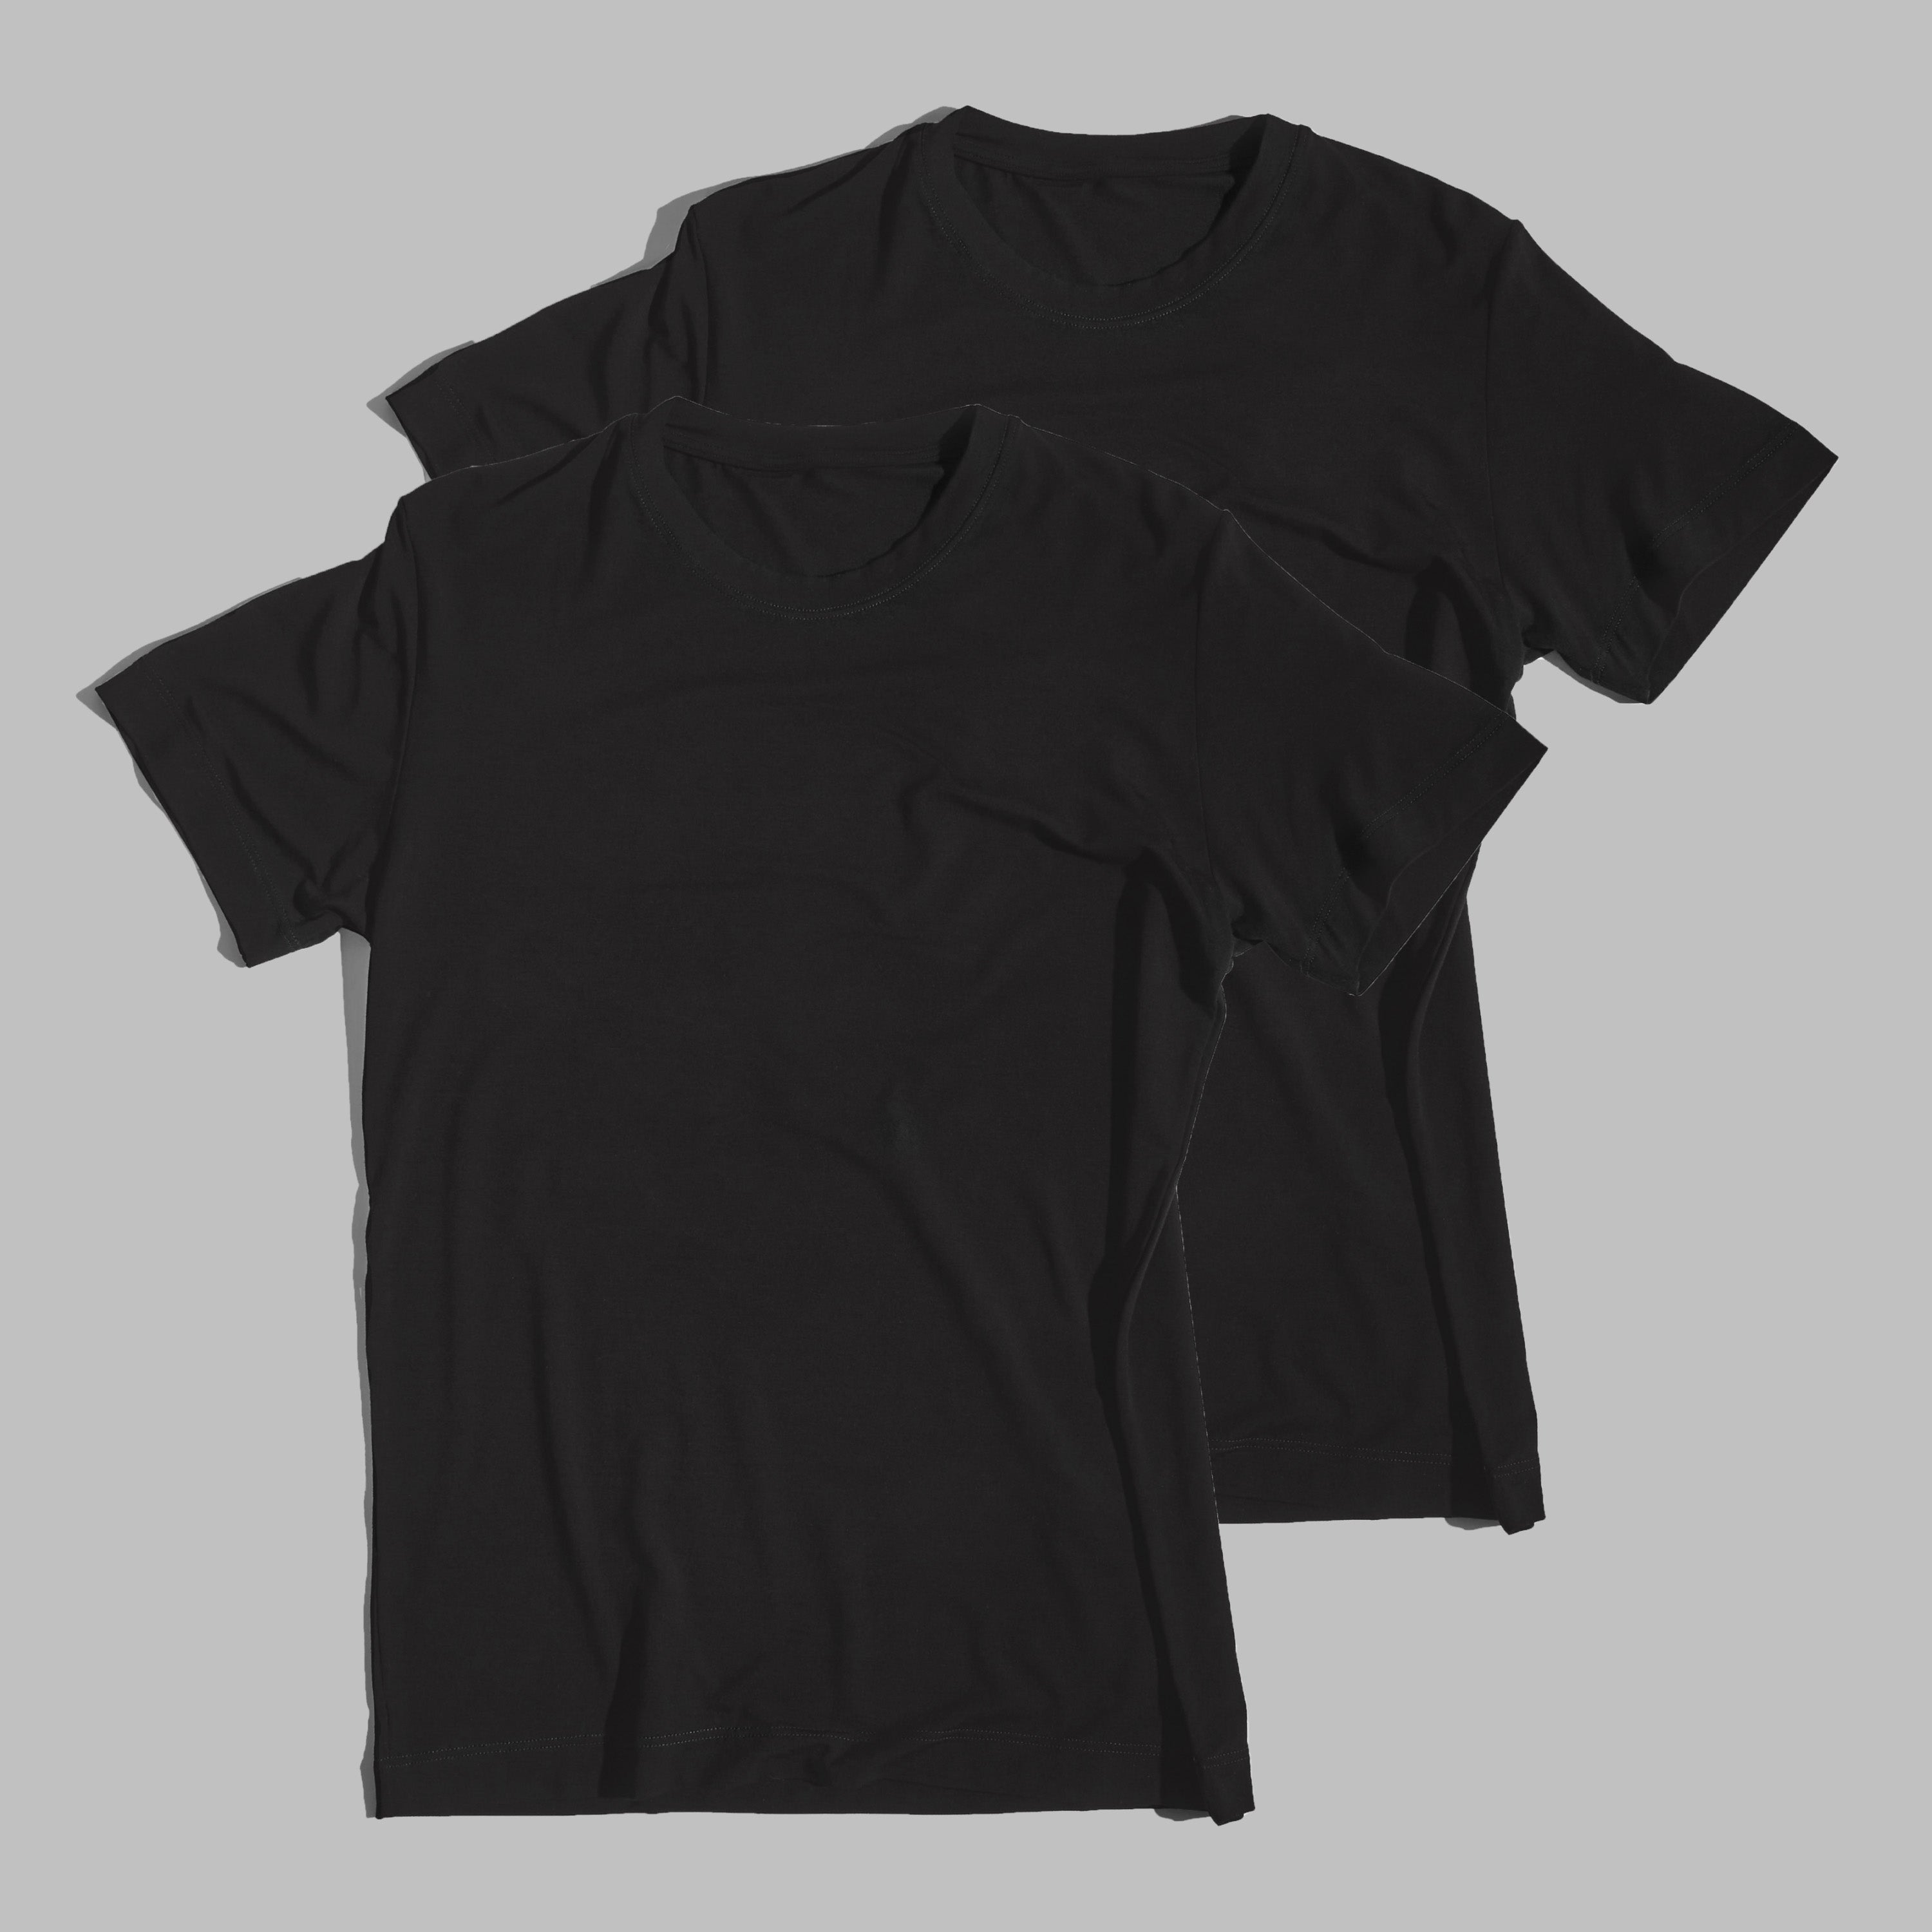 2 x T-shirt Black